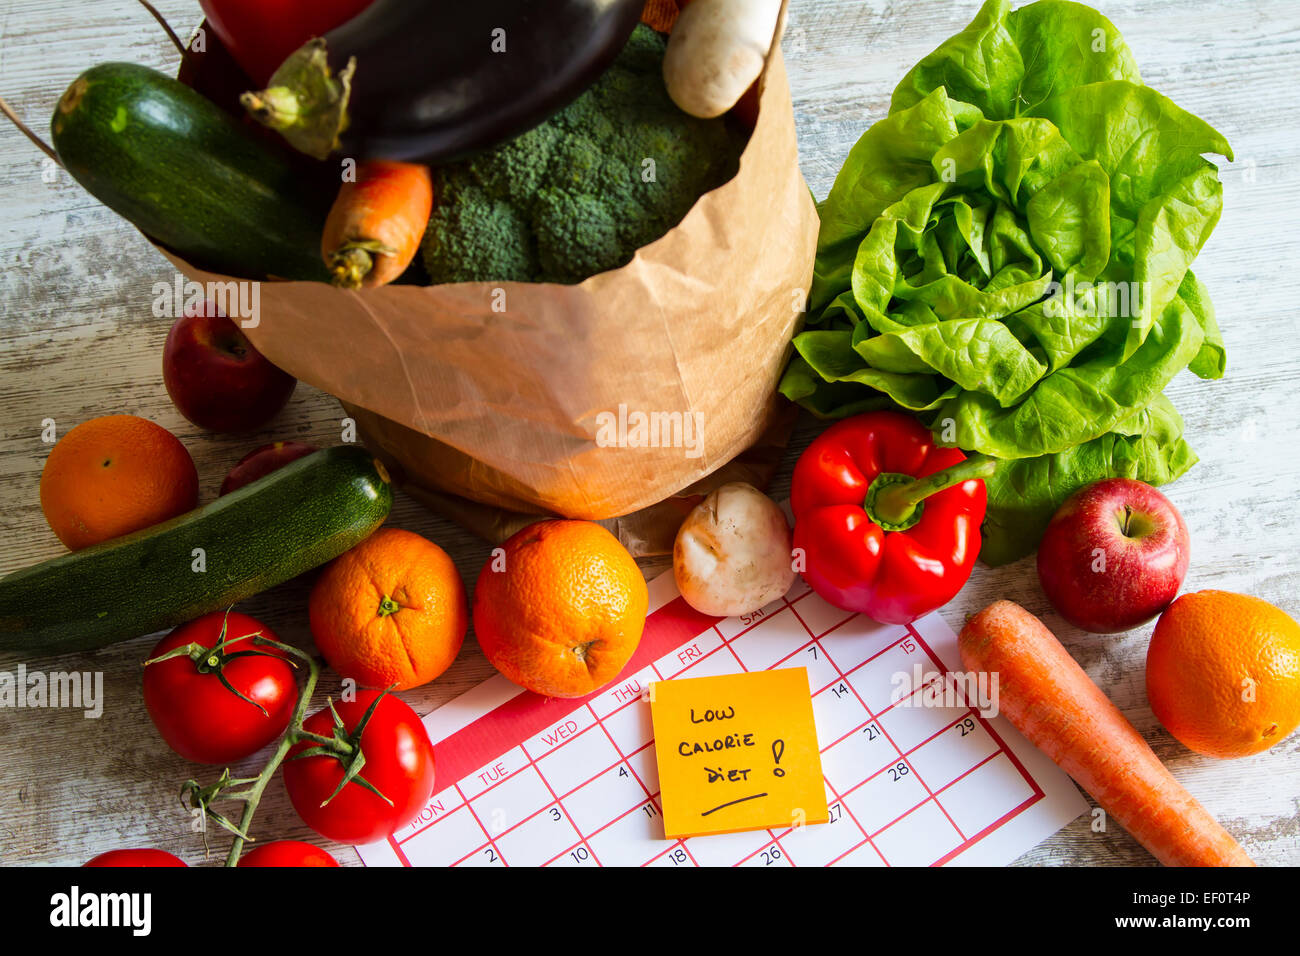 Kalorienarme Diät, Gemüse und Obst Stockfoto